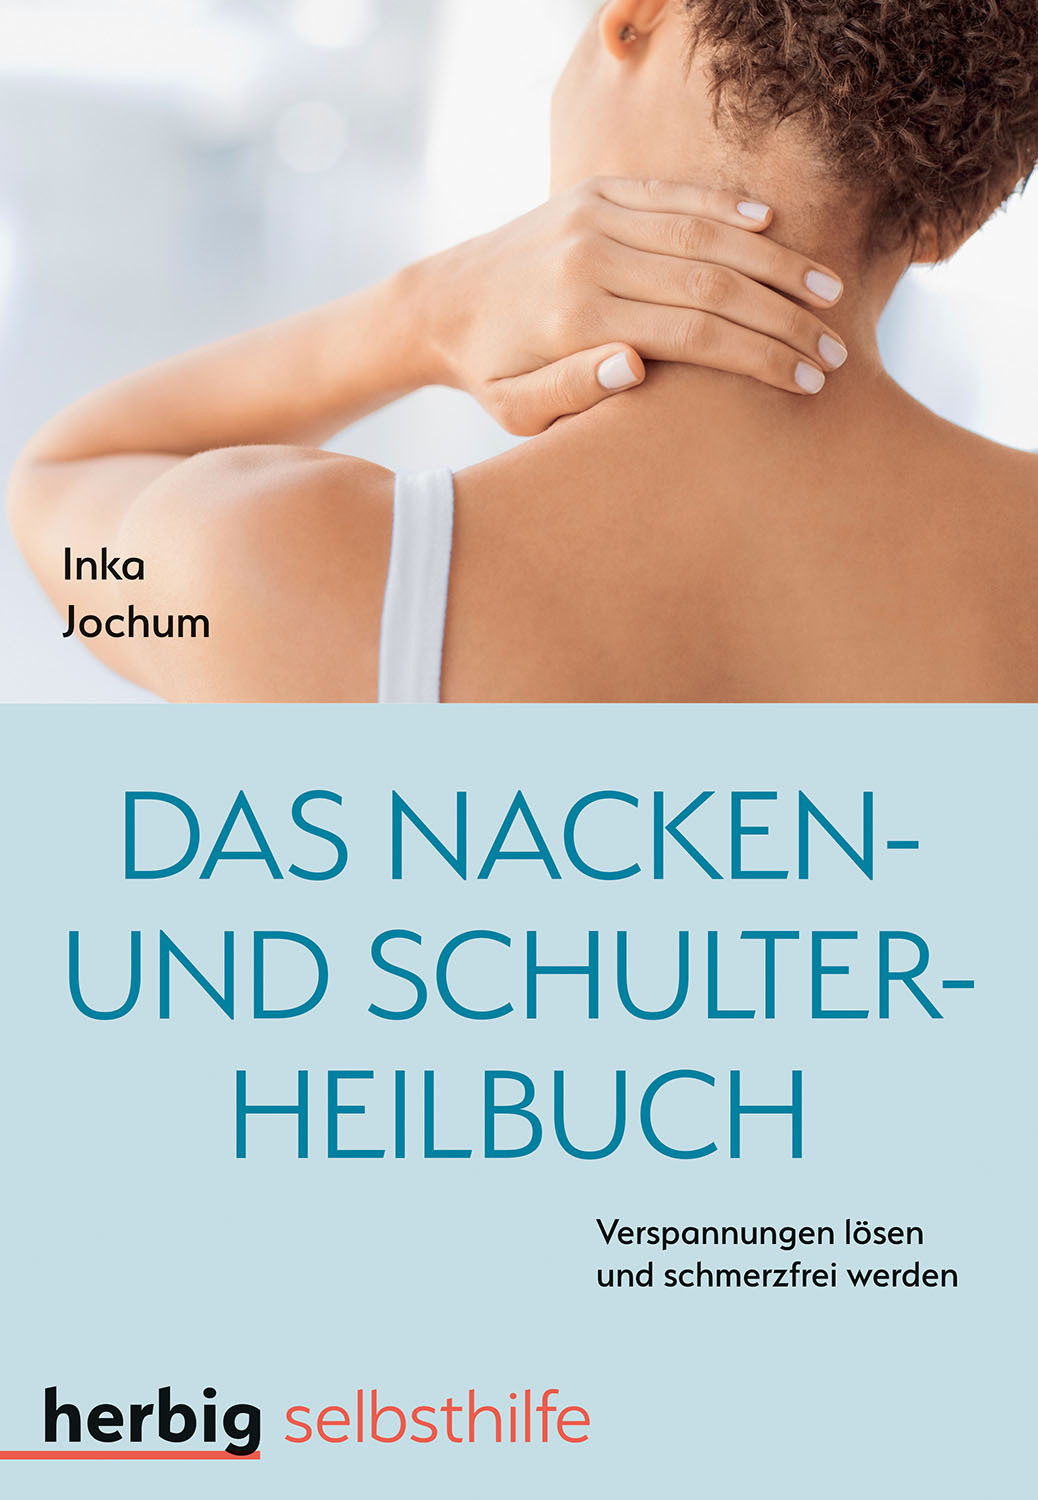 Das Nacken- und Schulterheilbuch: Mit Leichtigkeit …“ (Inka Jochum) – Buch  antiquarisch kaufen – A02E5kgv01ZZl